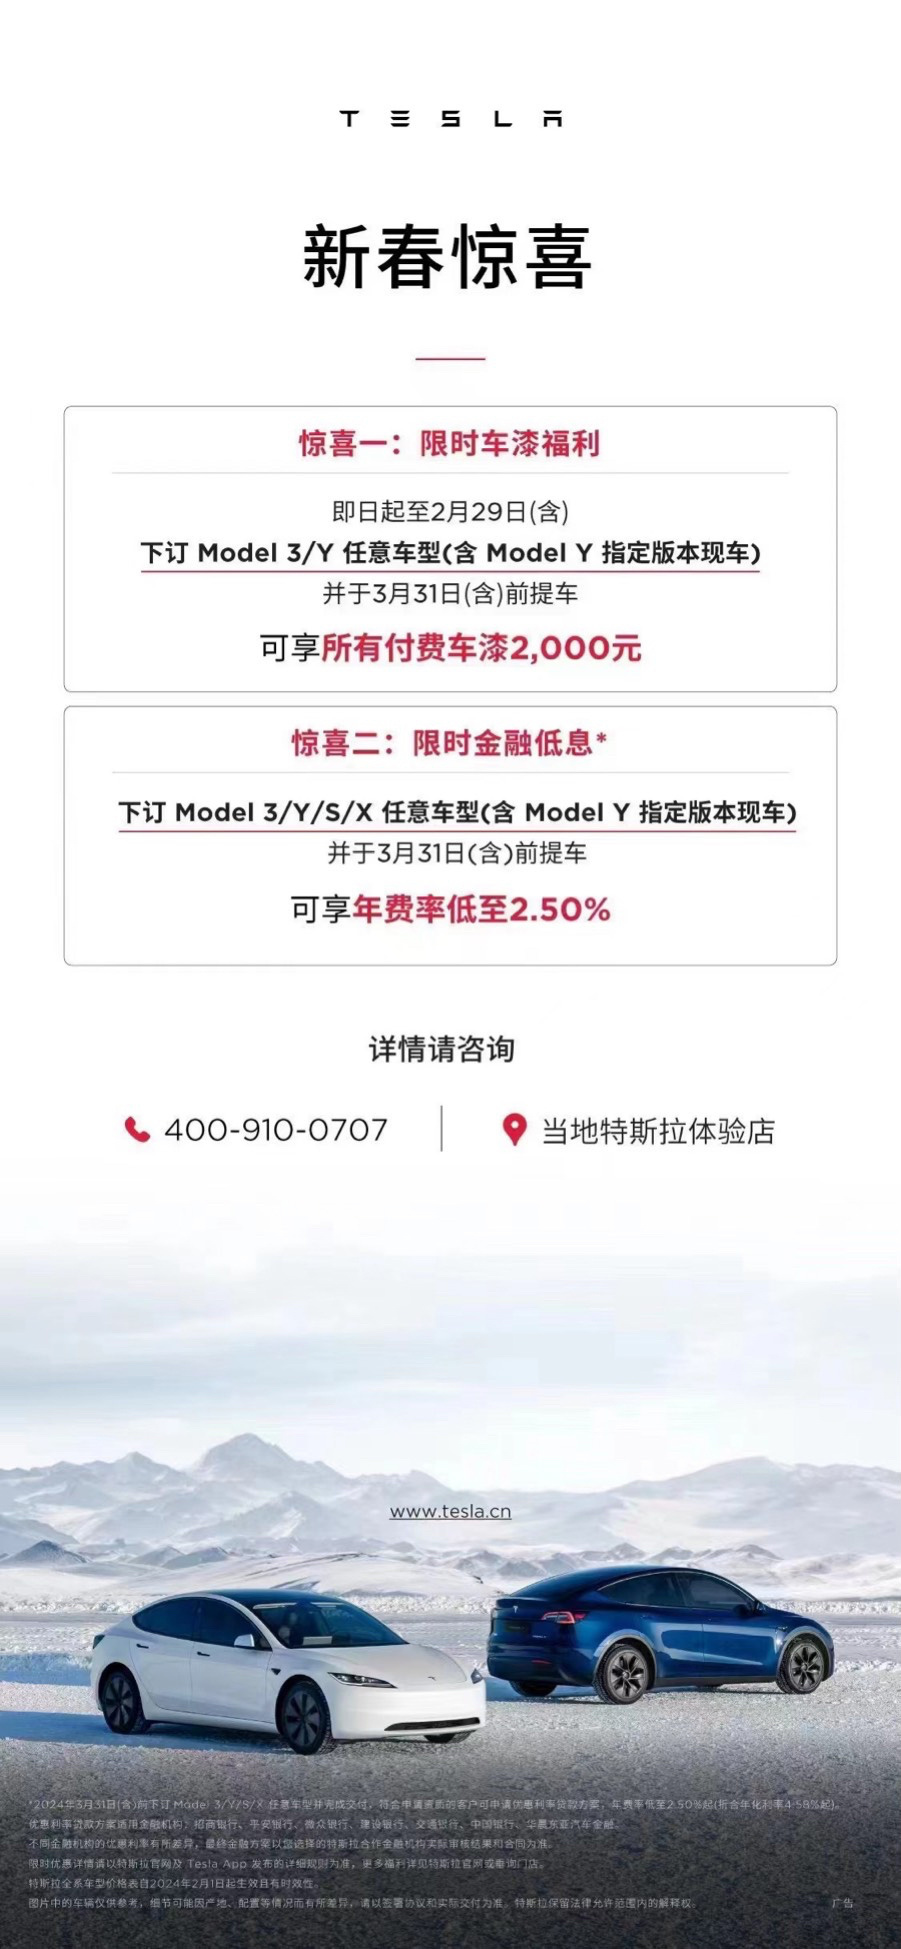 【爱车基地】特斯拉 Model Y 升级 HW4.0 辅助驾驶硬件-第6张